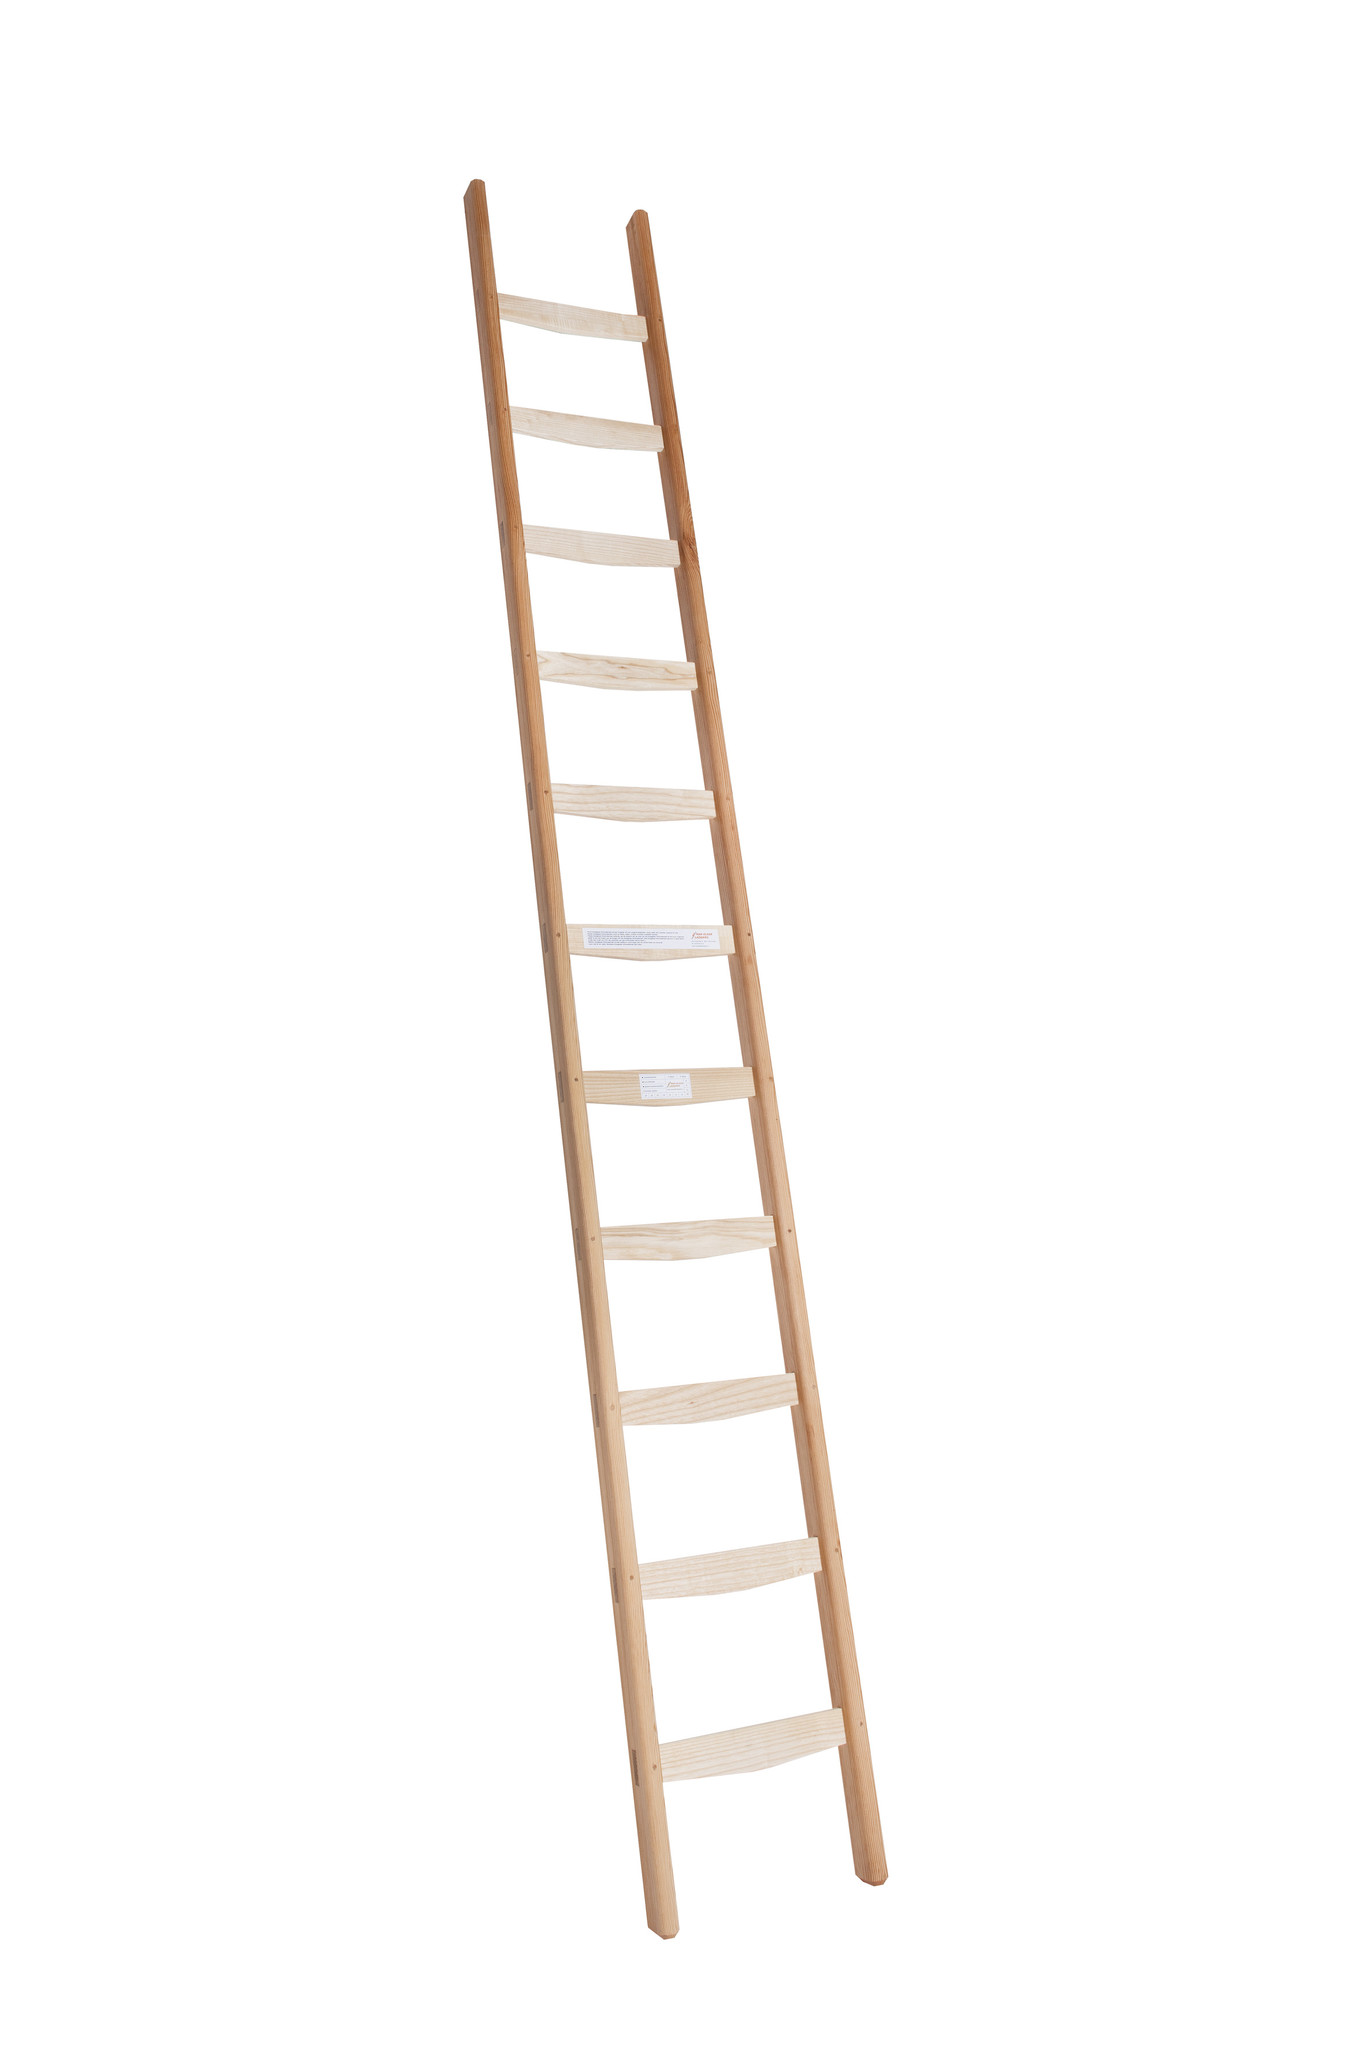 Houten enkele ladder kopen? vaneldikladders.nl